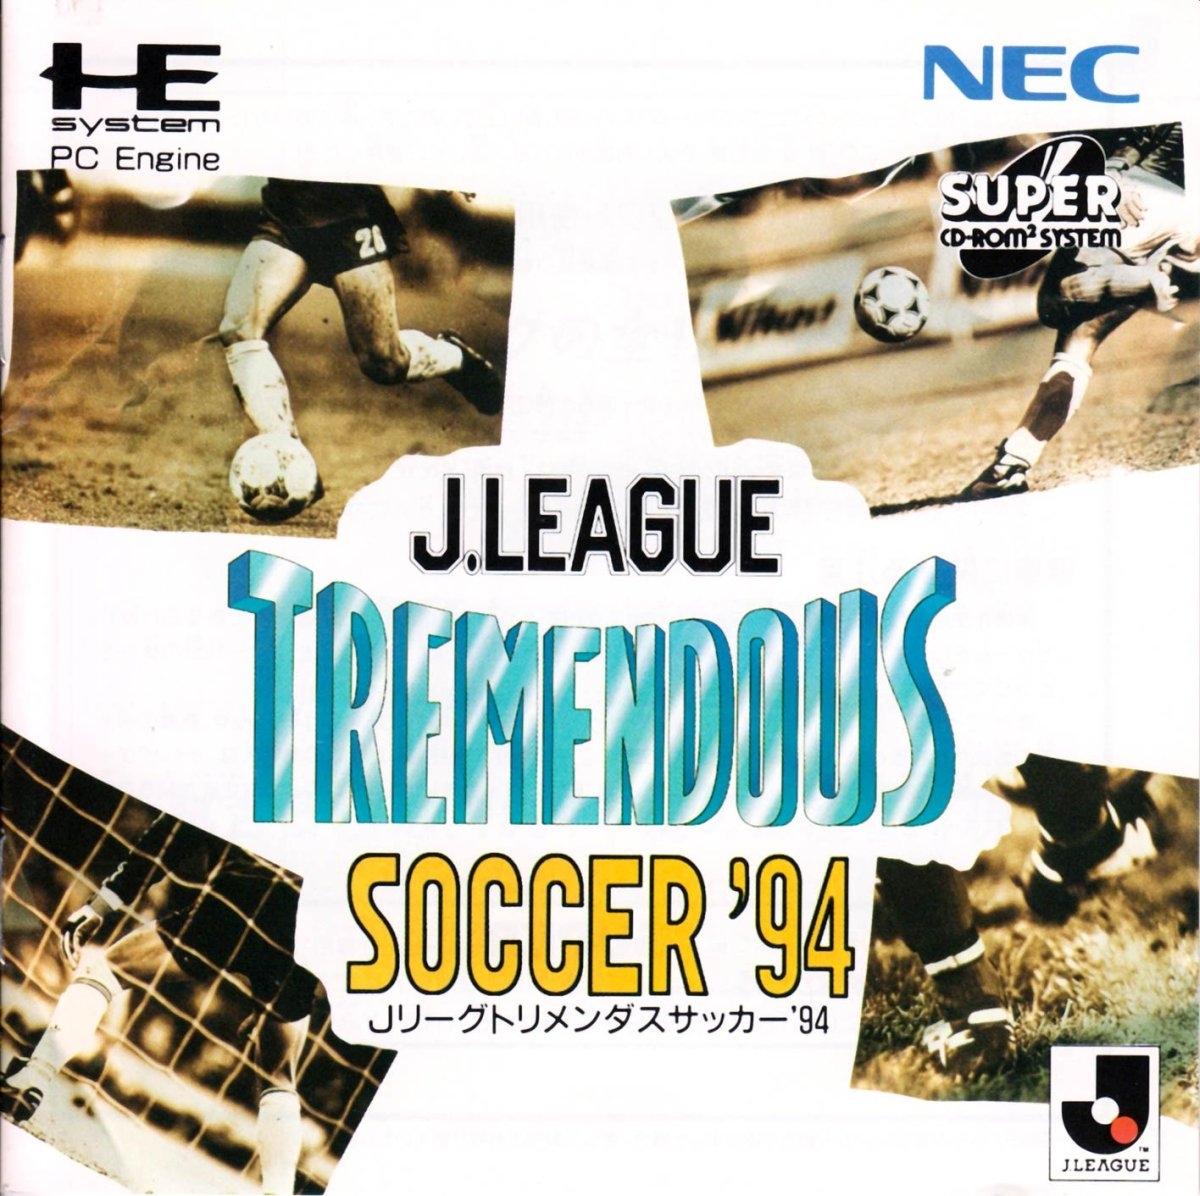 J-League Tremendous Soccer 94 cover